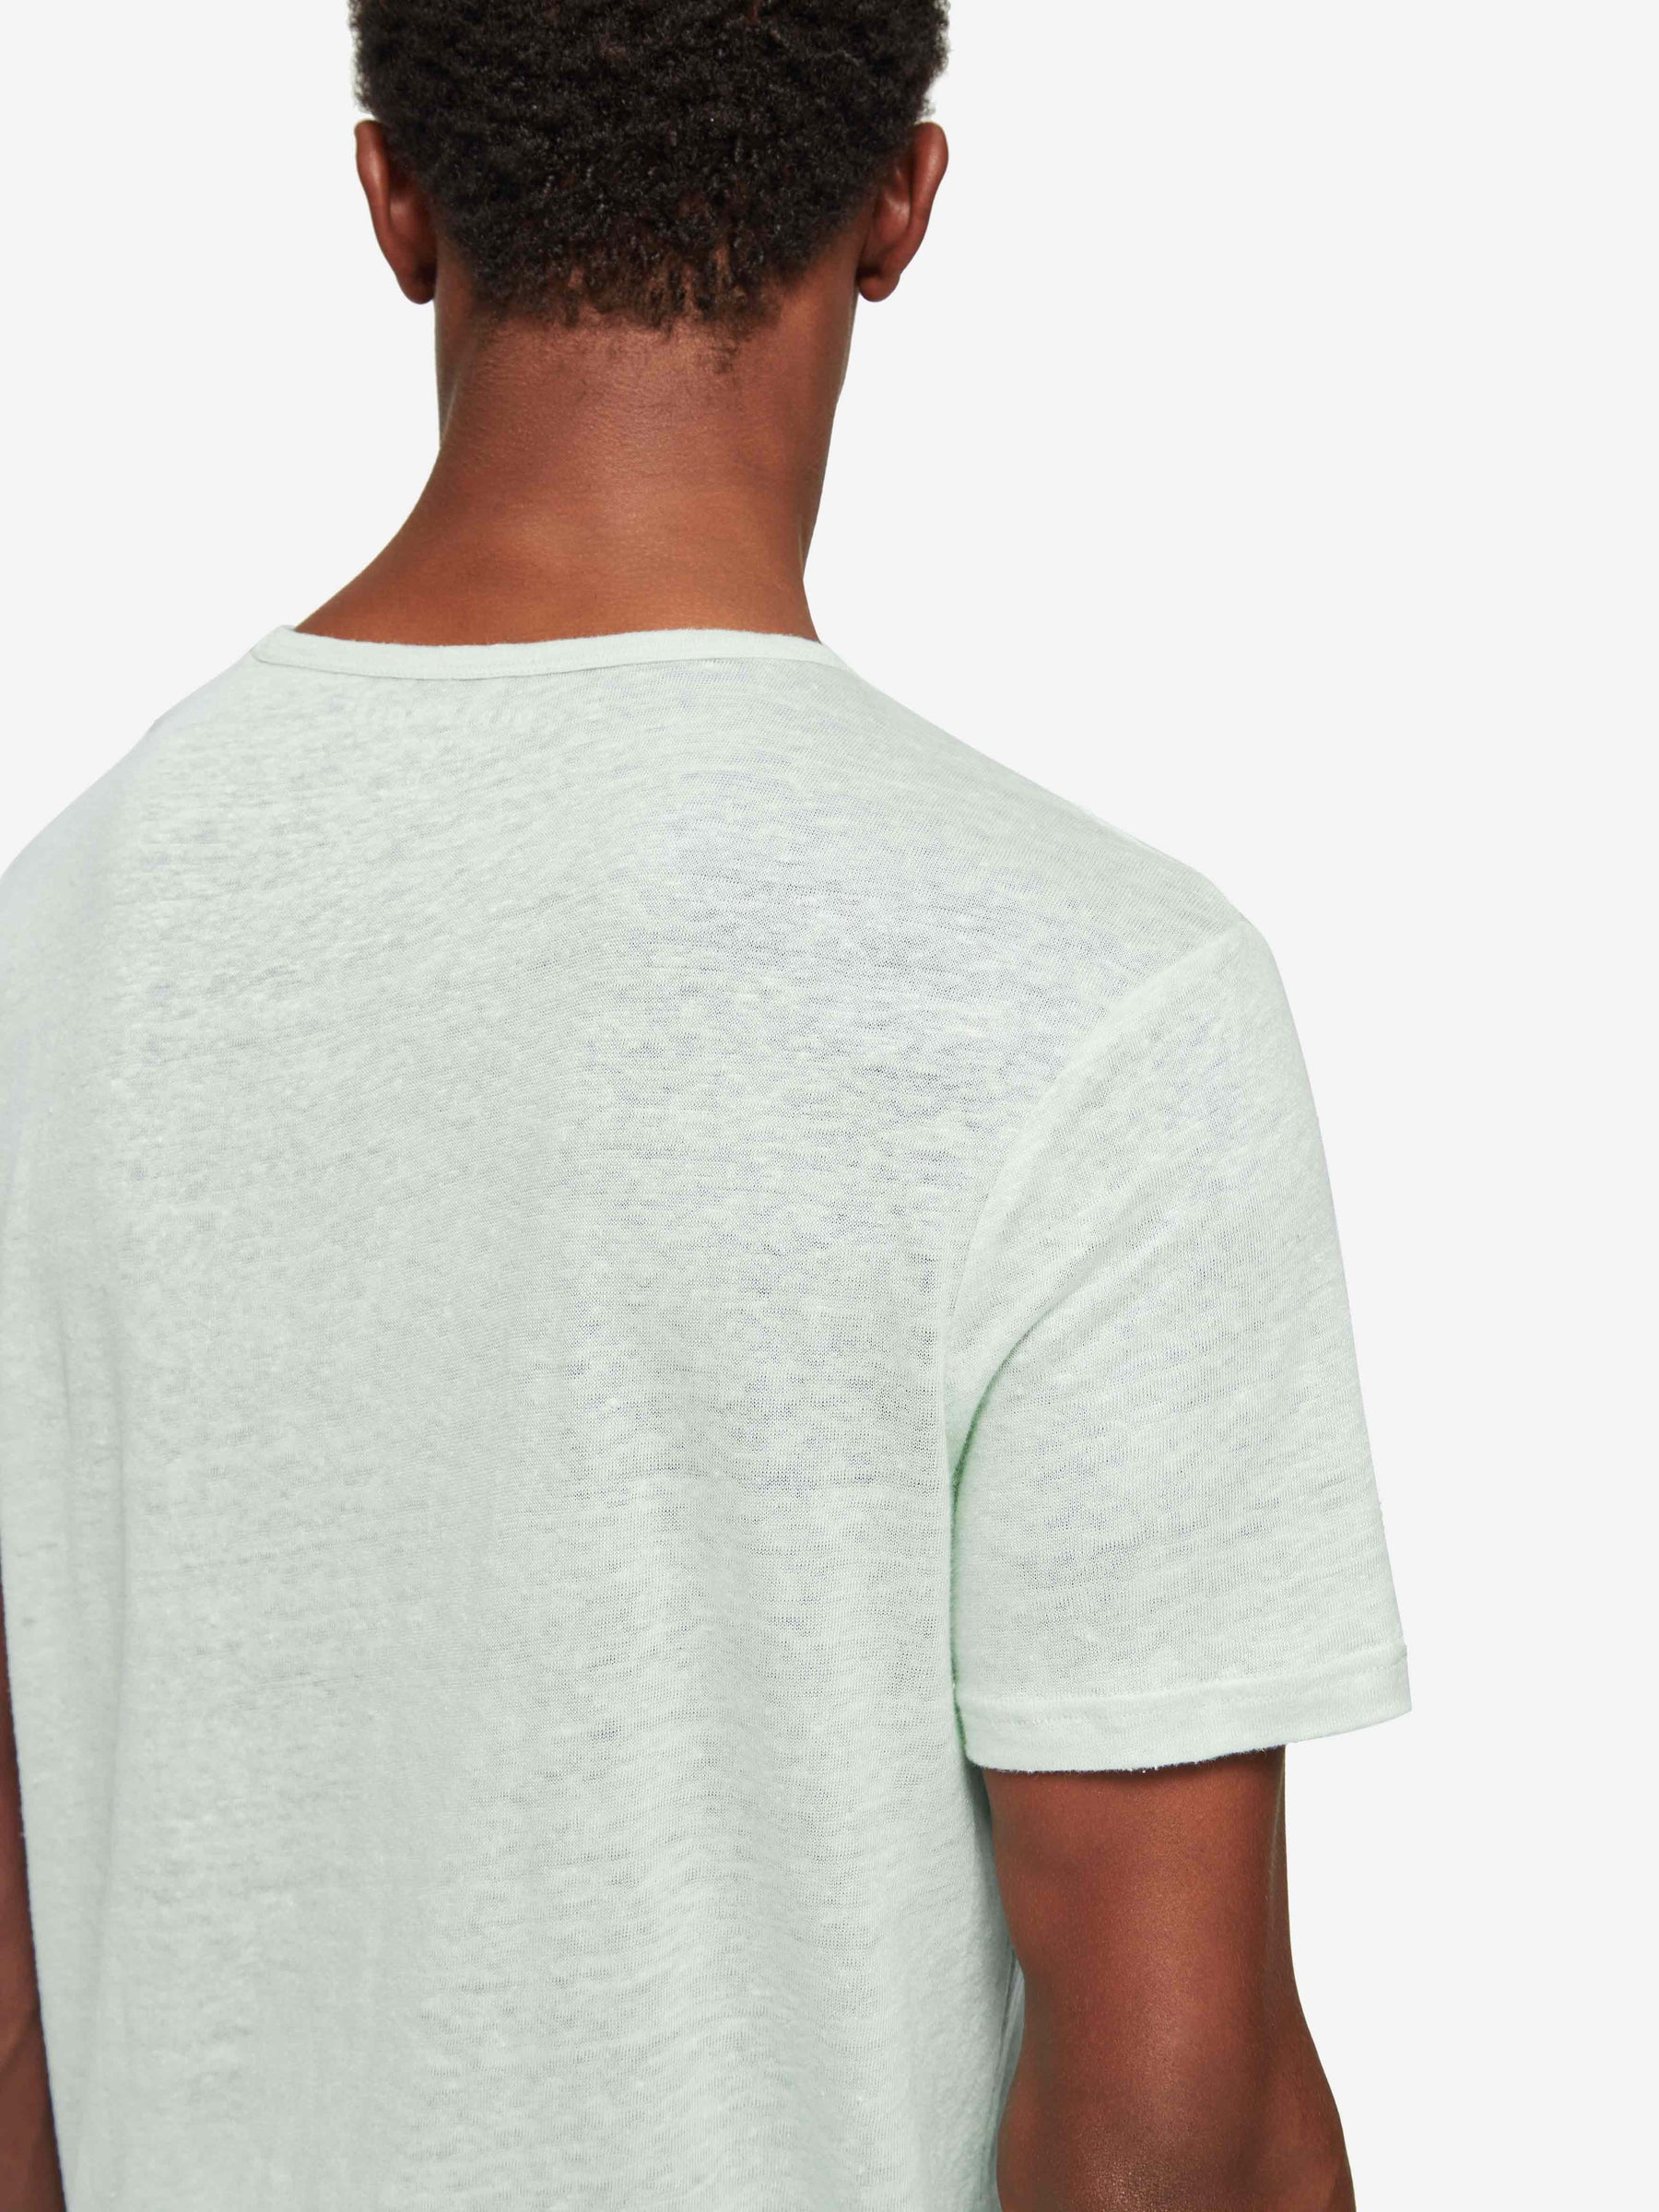 Men's T-Shirt Jordan Linen Mint